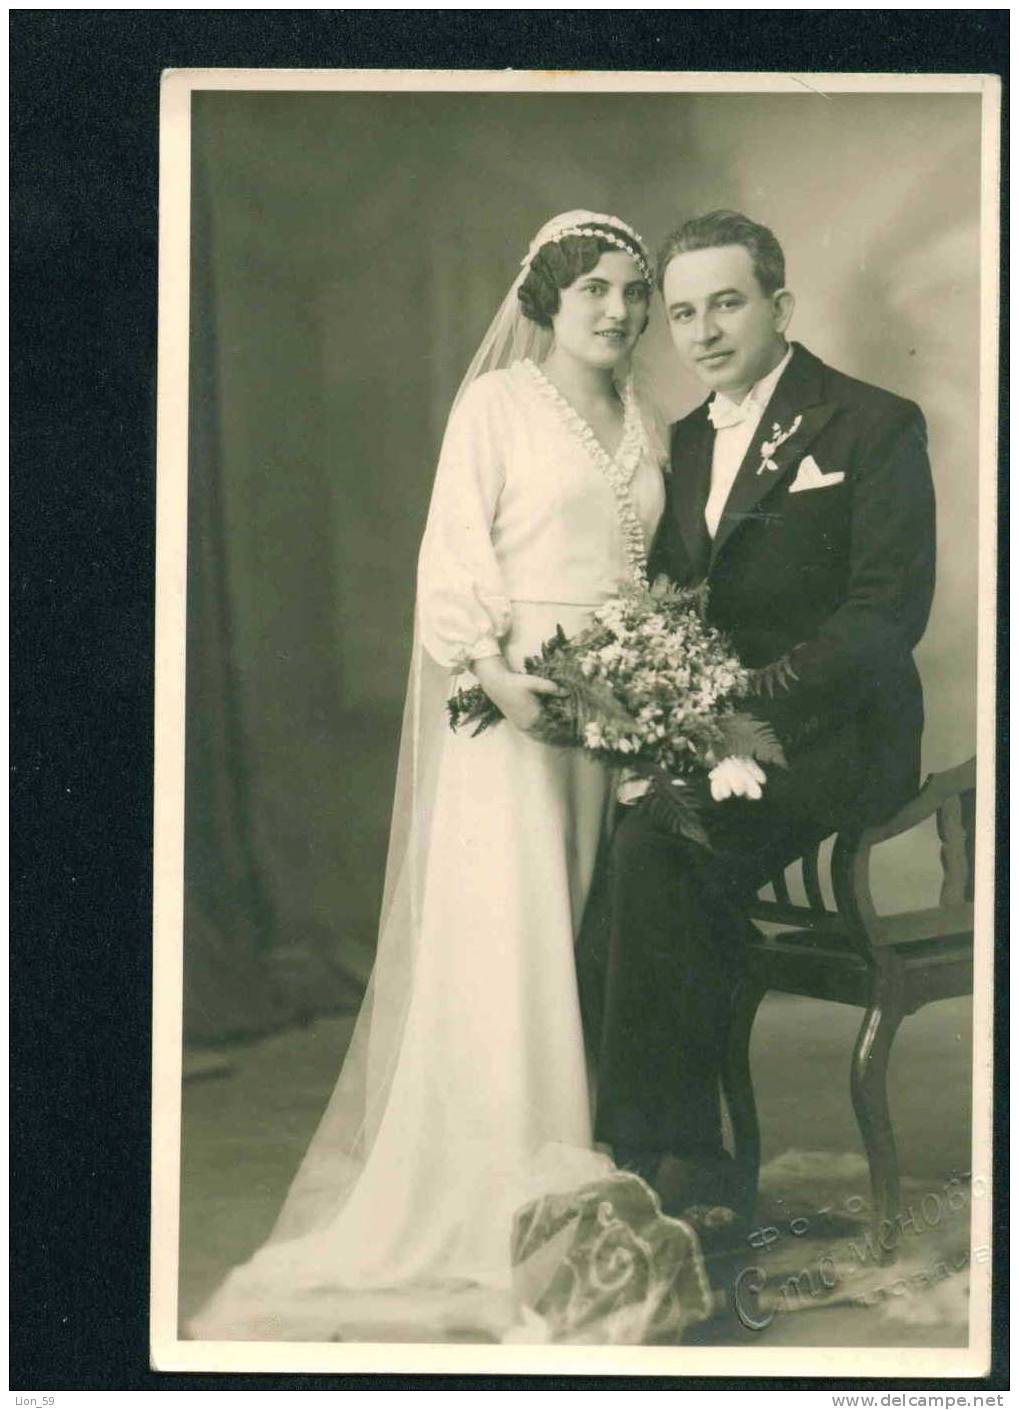 D3078 / Marriages  WEDDING , BRIDE W BRIDEGROOM Bulgaria 1935s Vintage REAL Photo Bulgaria - Noces